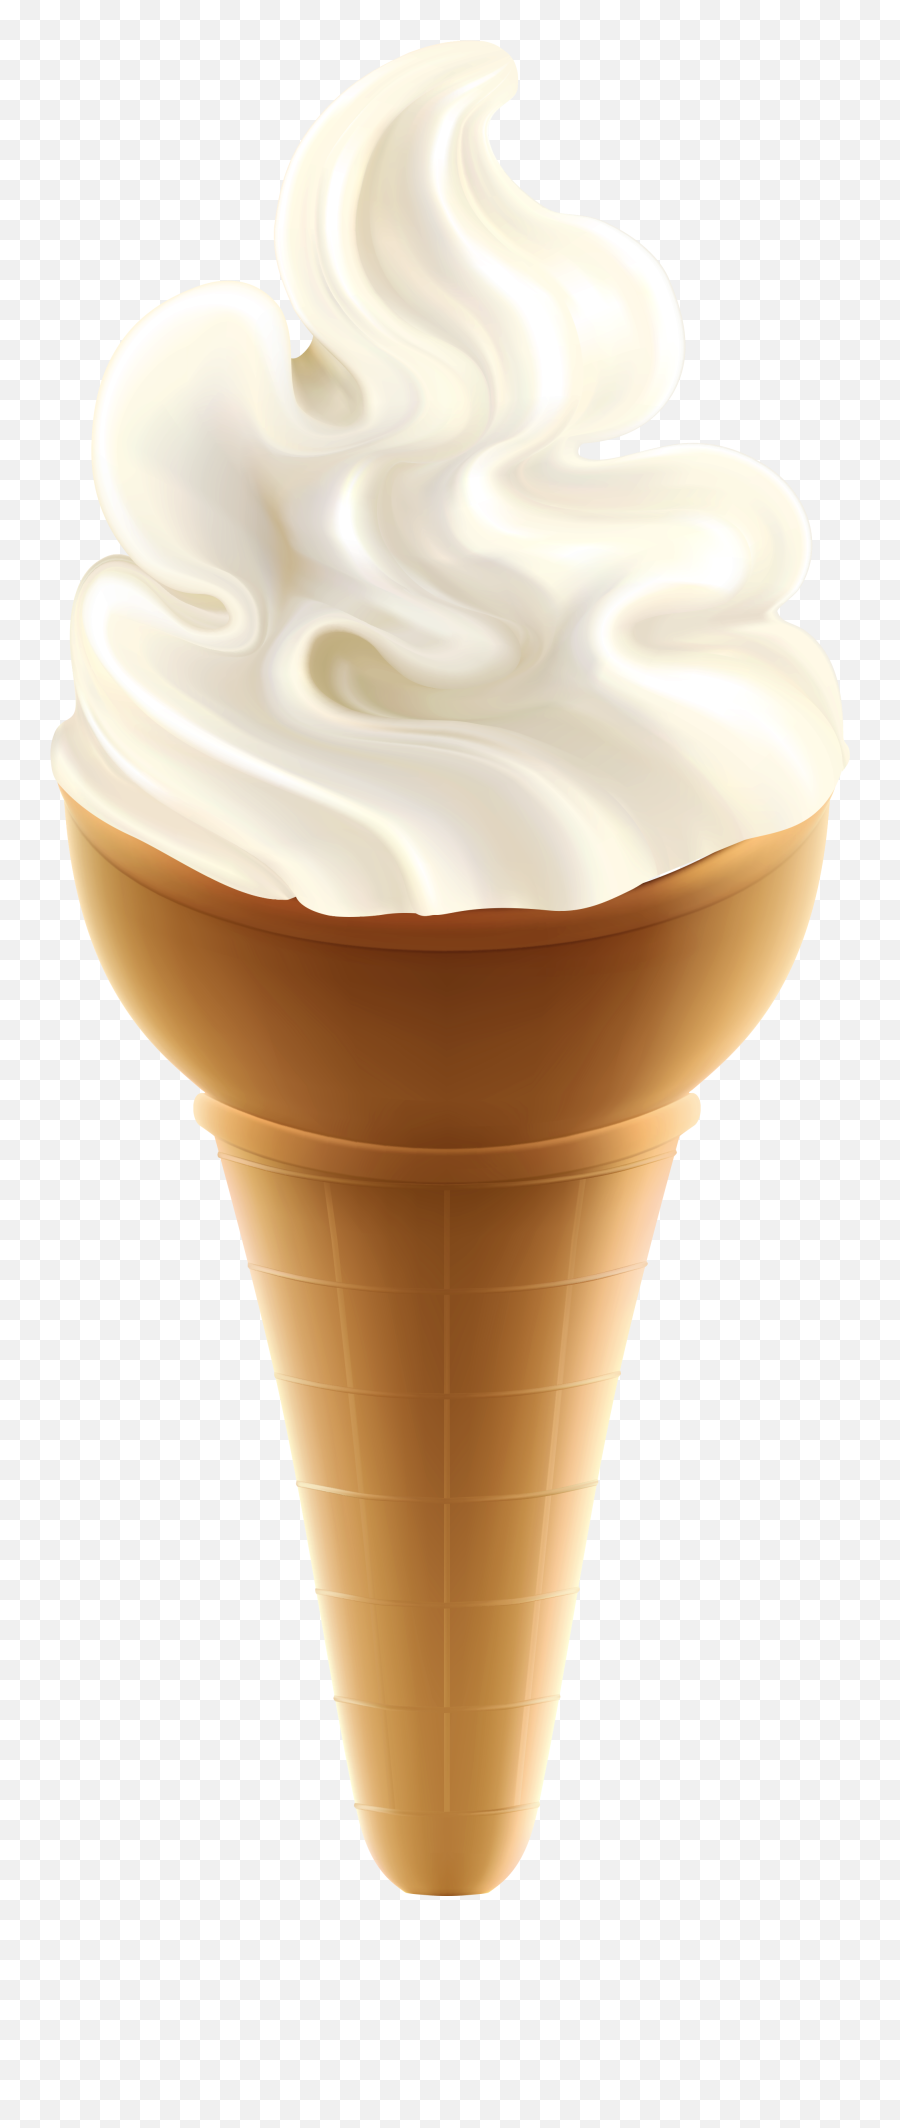 Ice Cream Cone Sundae Chocolate Ice Cream - Transparent Ice Transparent Background Transparent Ice Cream Cone Emoji,Ice Cream Sundae Emoji